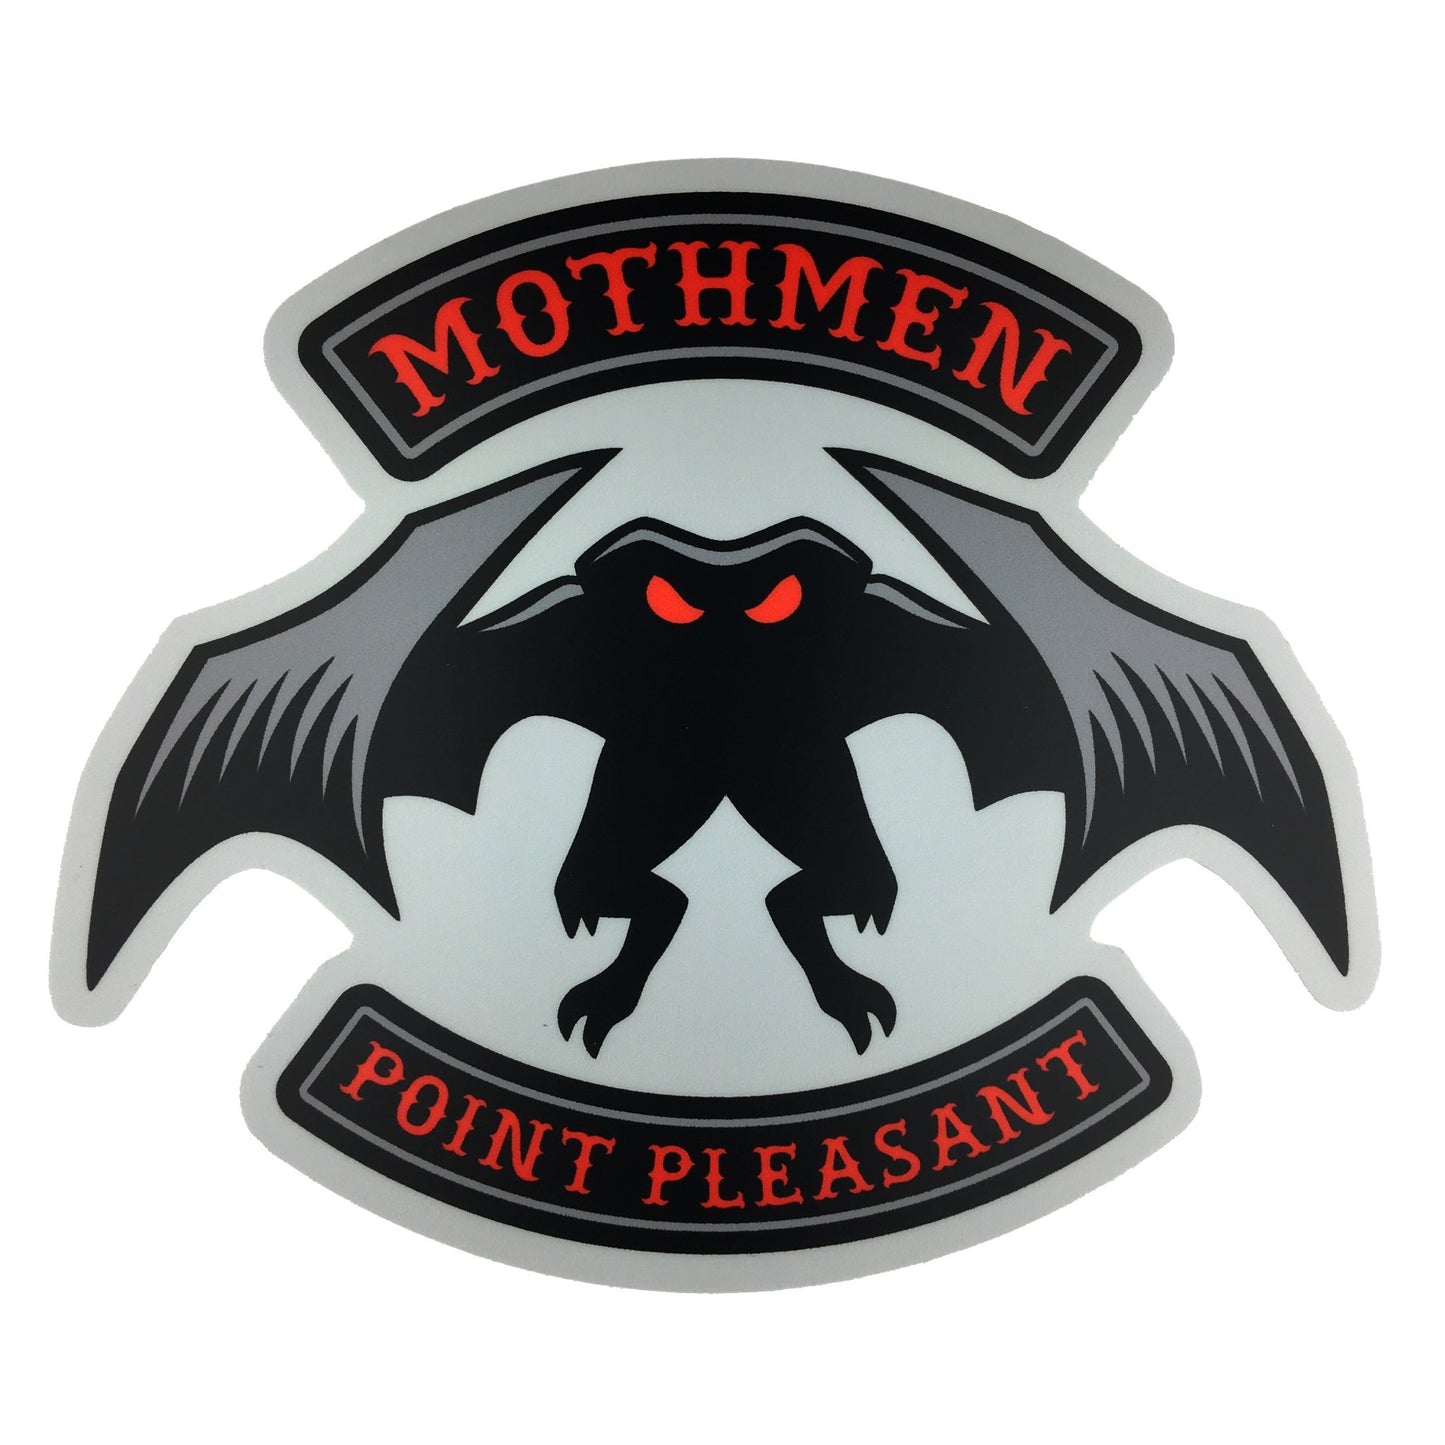 Mothmen motorcycle club biker sticker